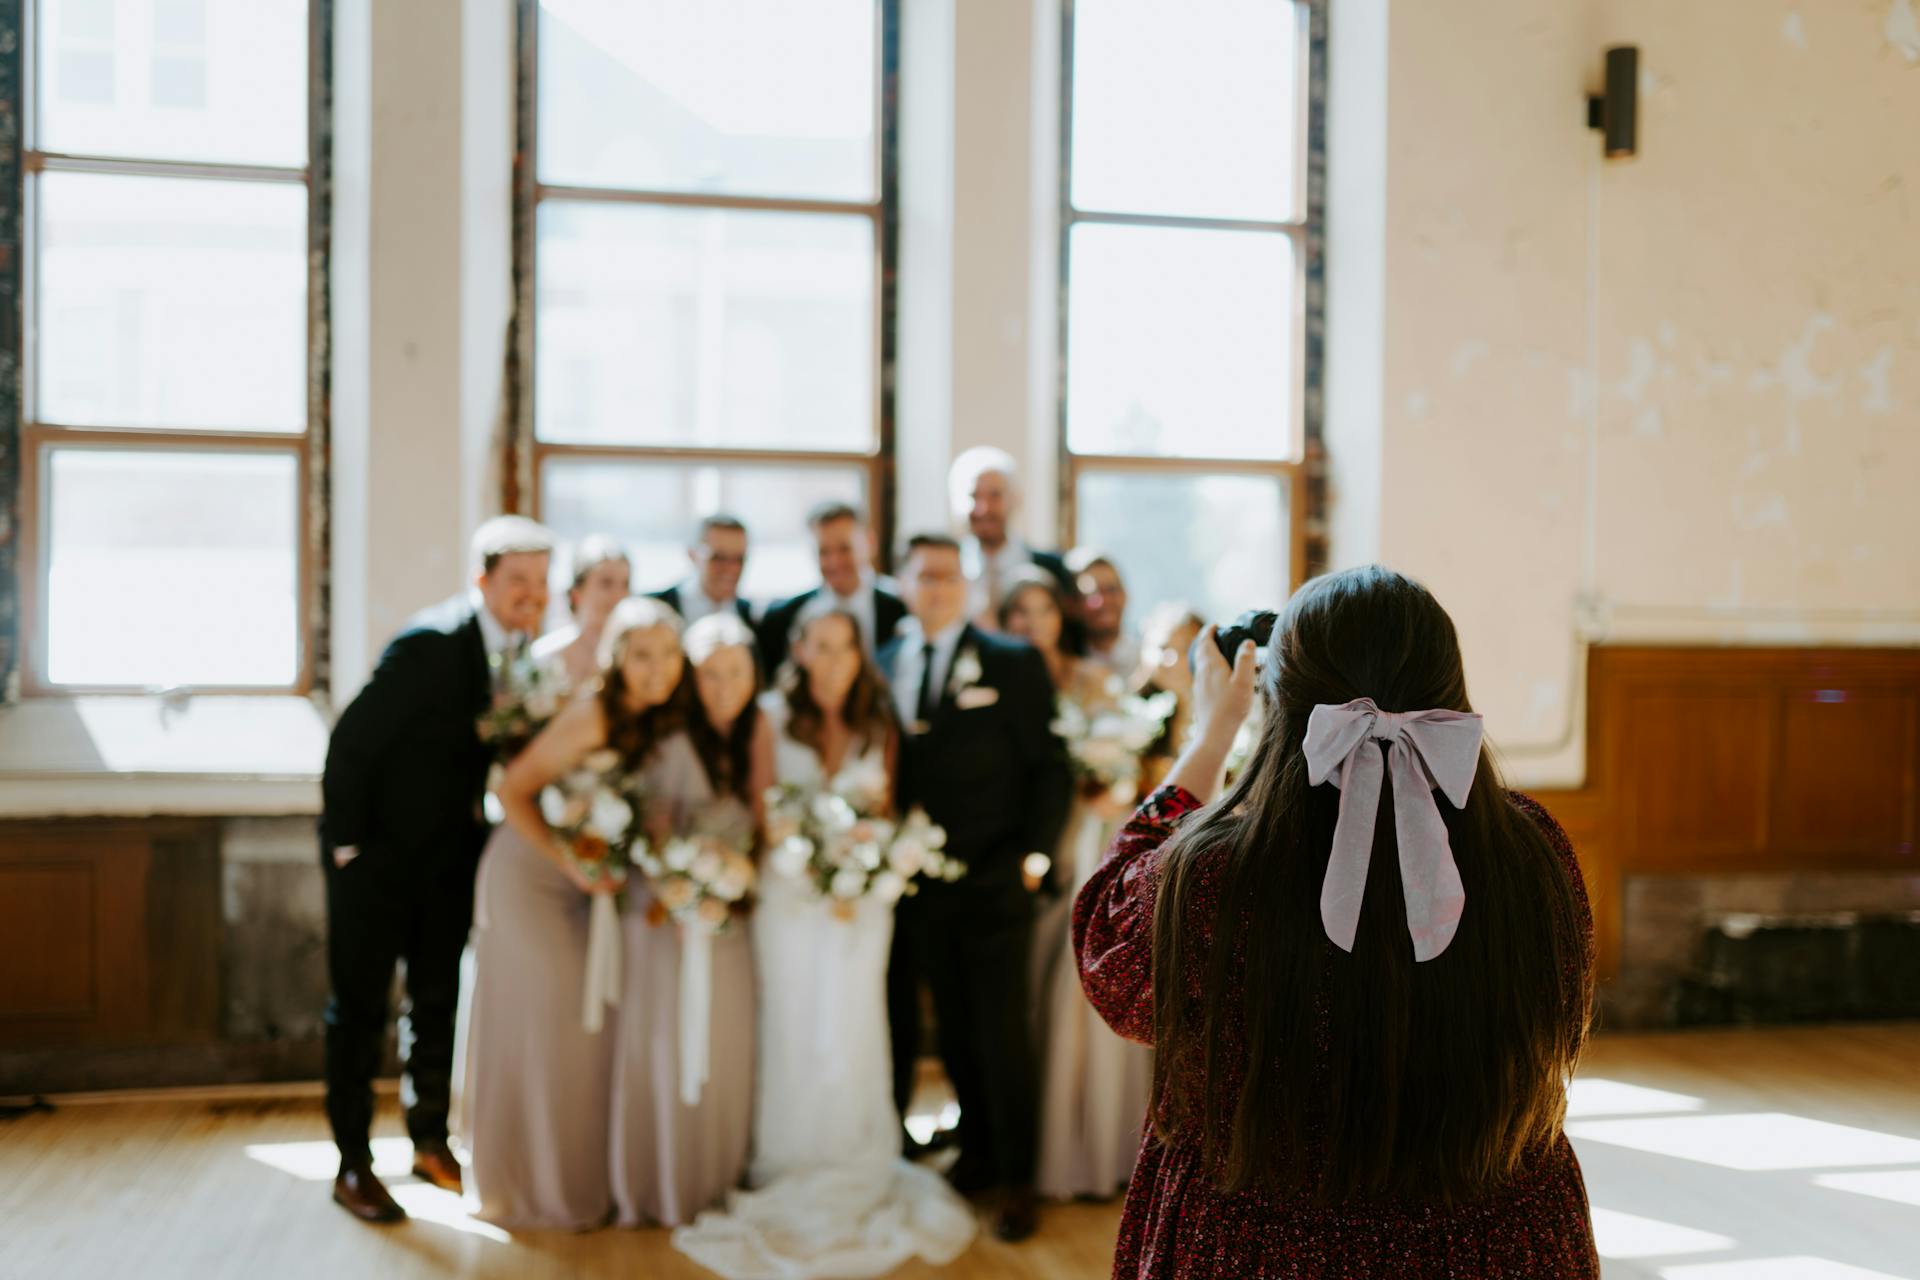 Eine Frau, die eine Gruppe bei einer Hochzeit fotografiert | Quelle: Pexels